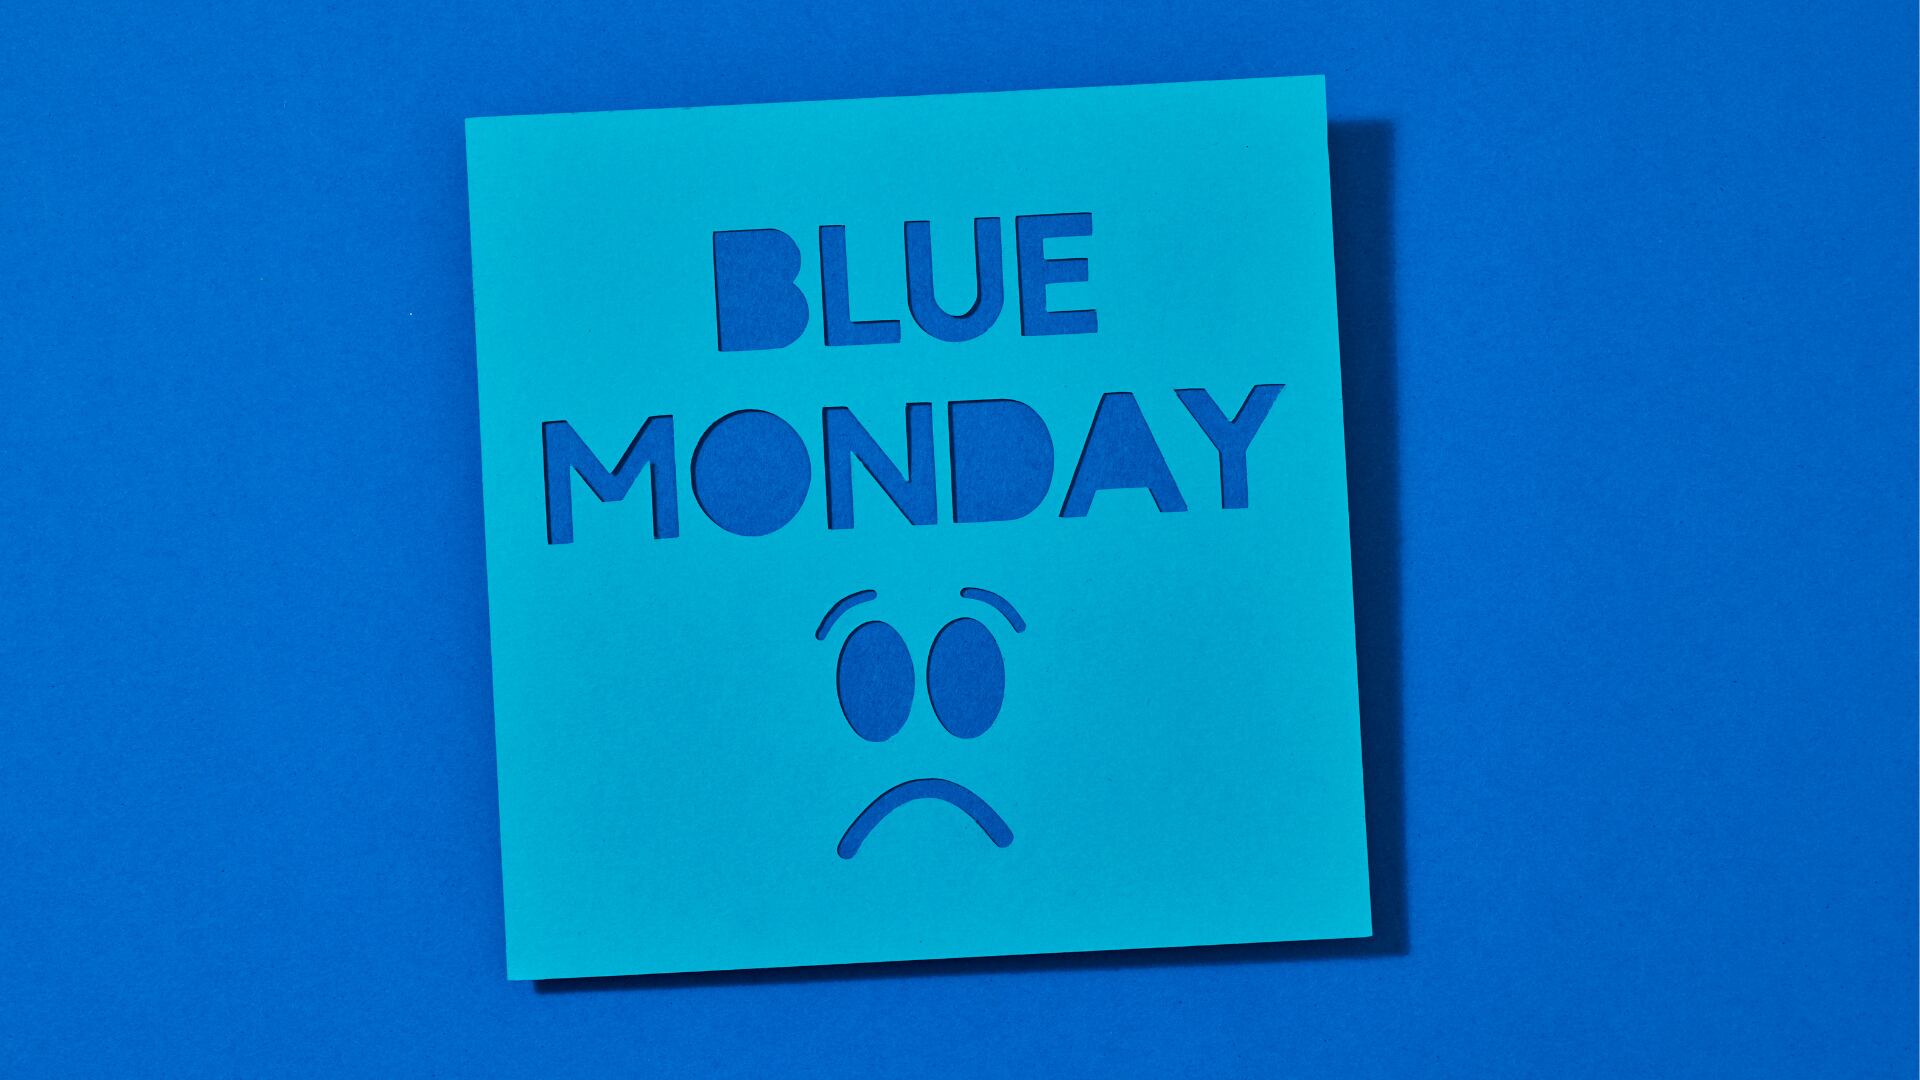 Aunque el 'Blue Monday' carece de base científica sólida, es un recordatorio de la importancia de cuidar la salud mental durante todo el año.